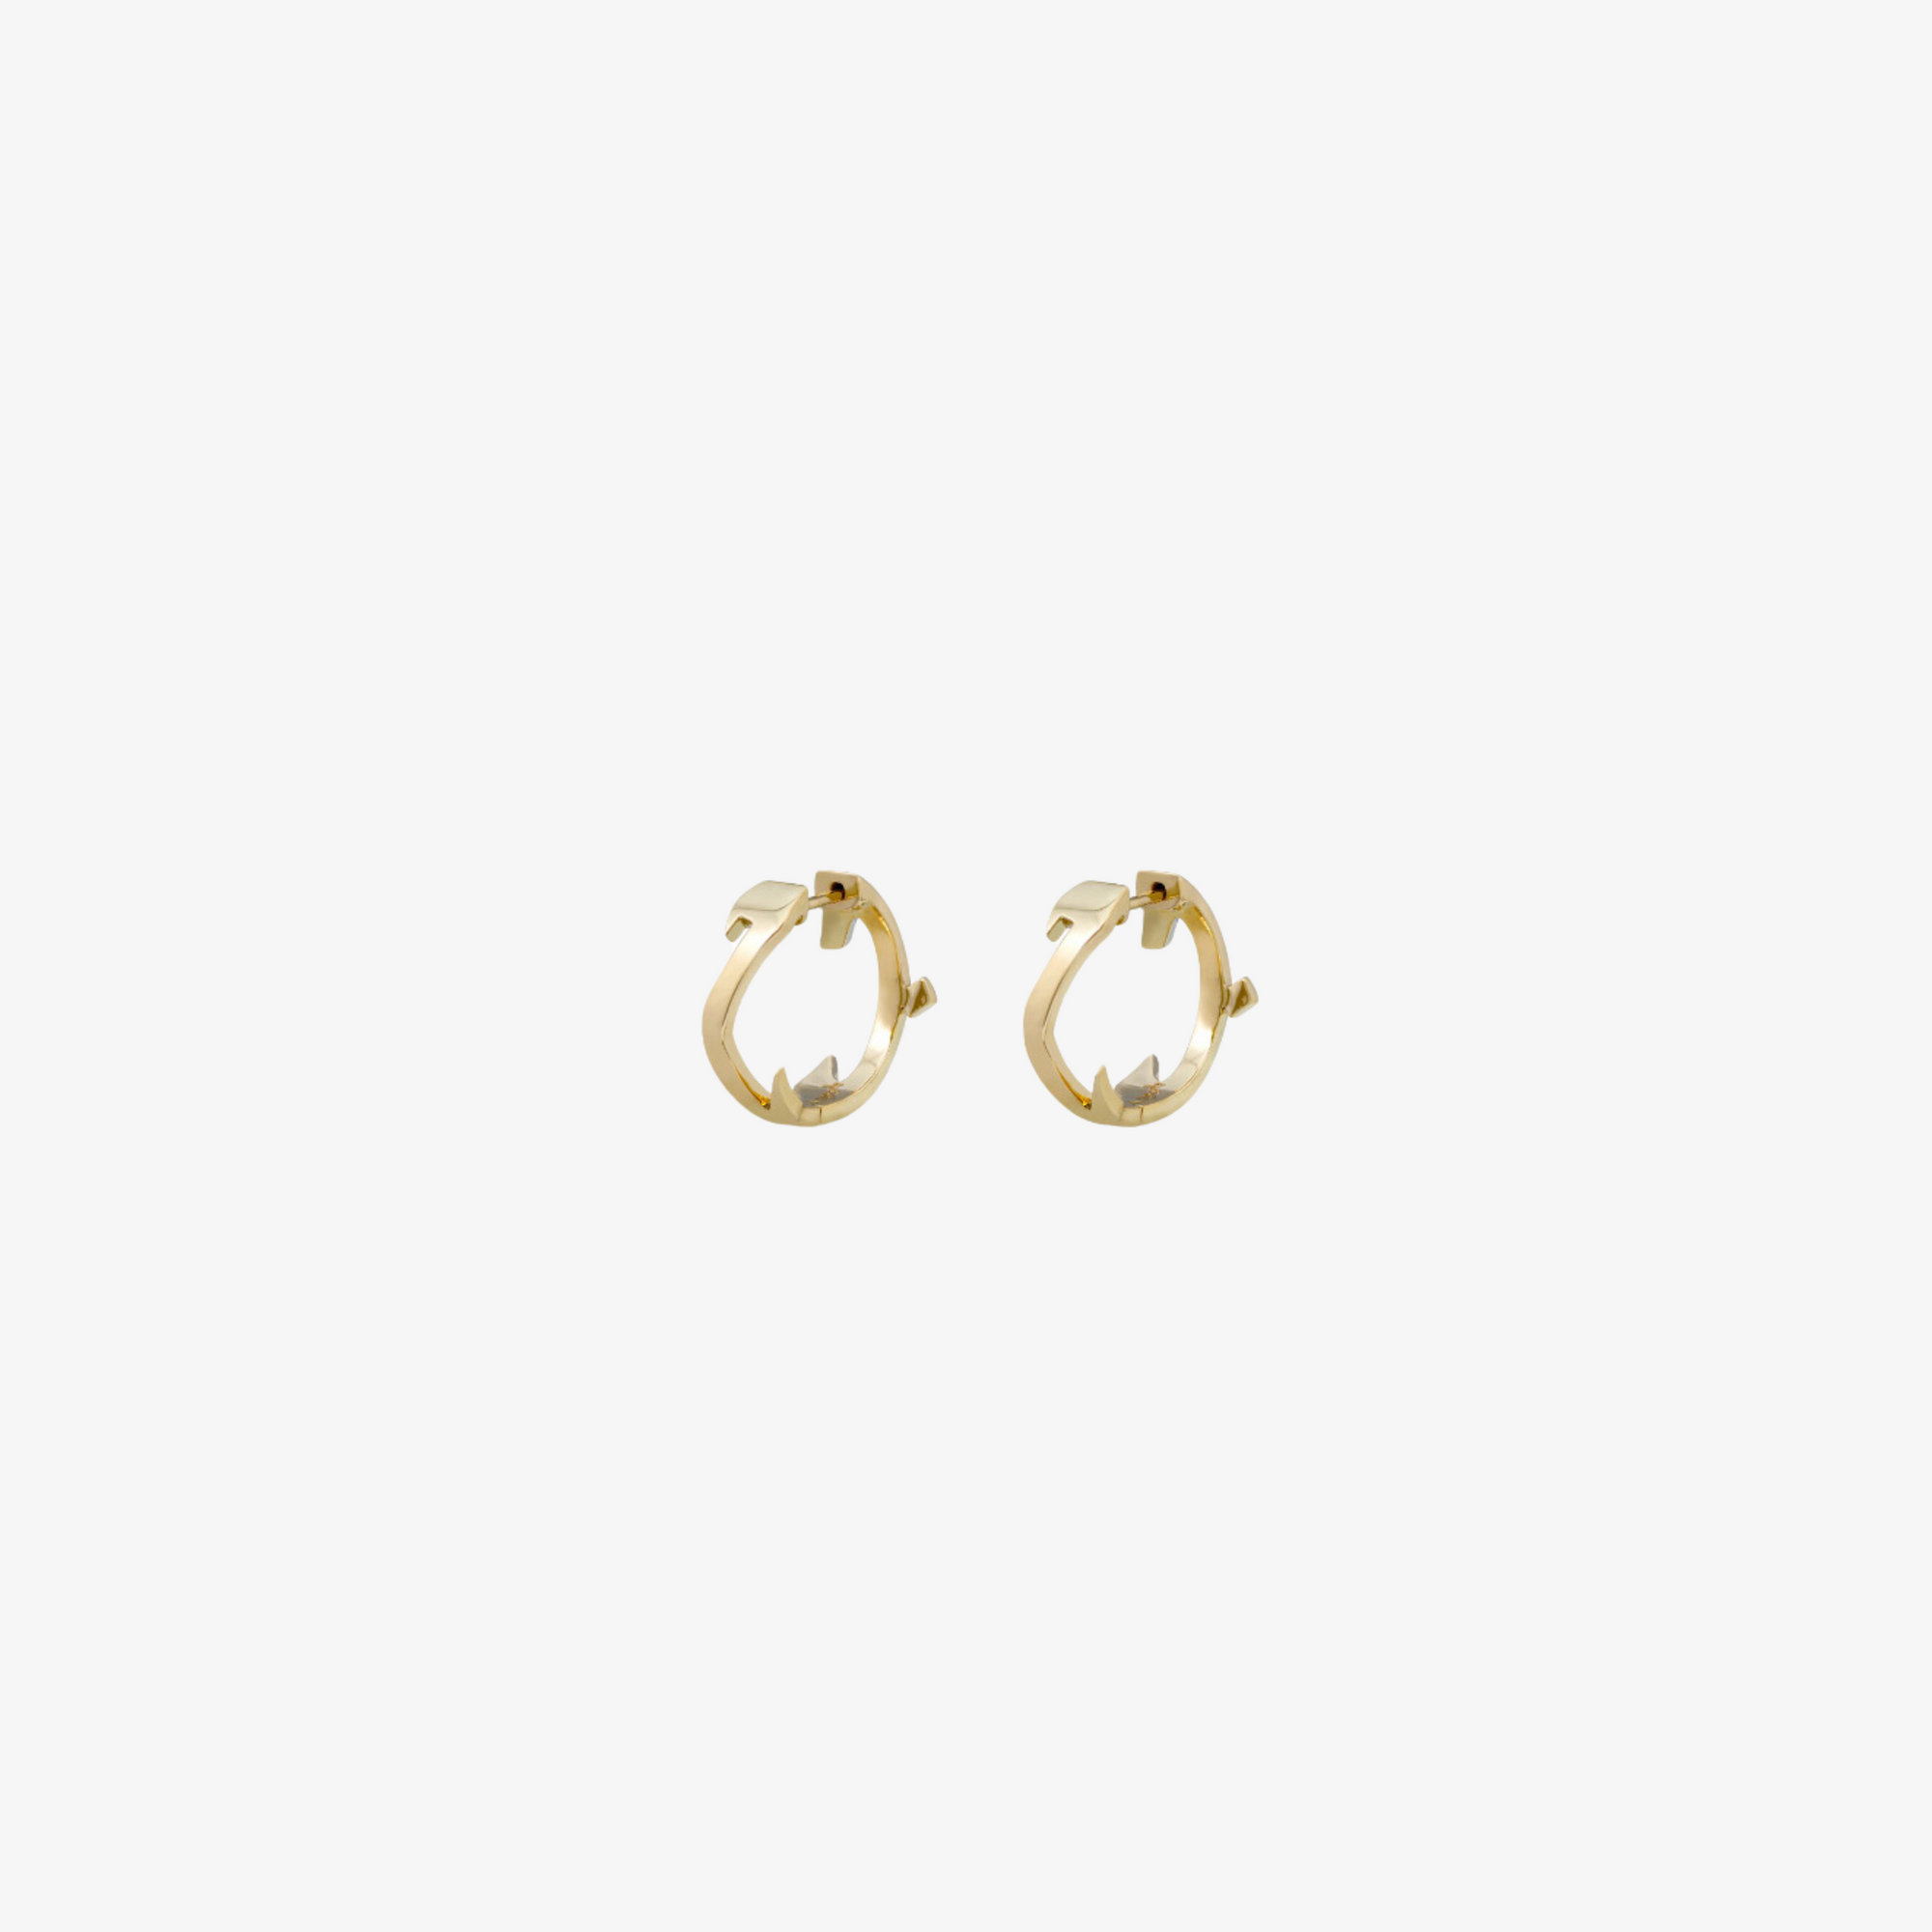 HOBBI - 18K Gold "Love" Earrings